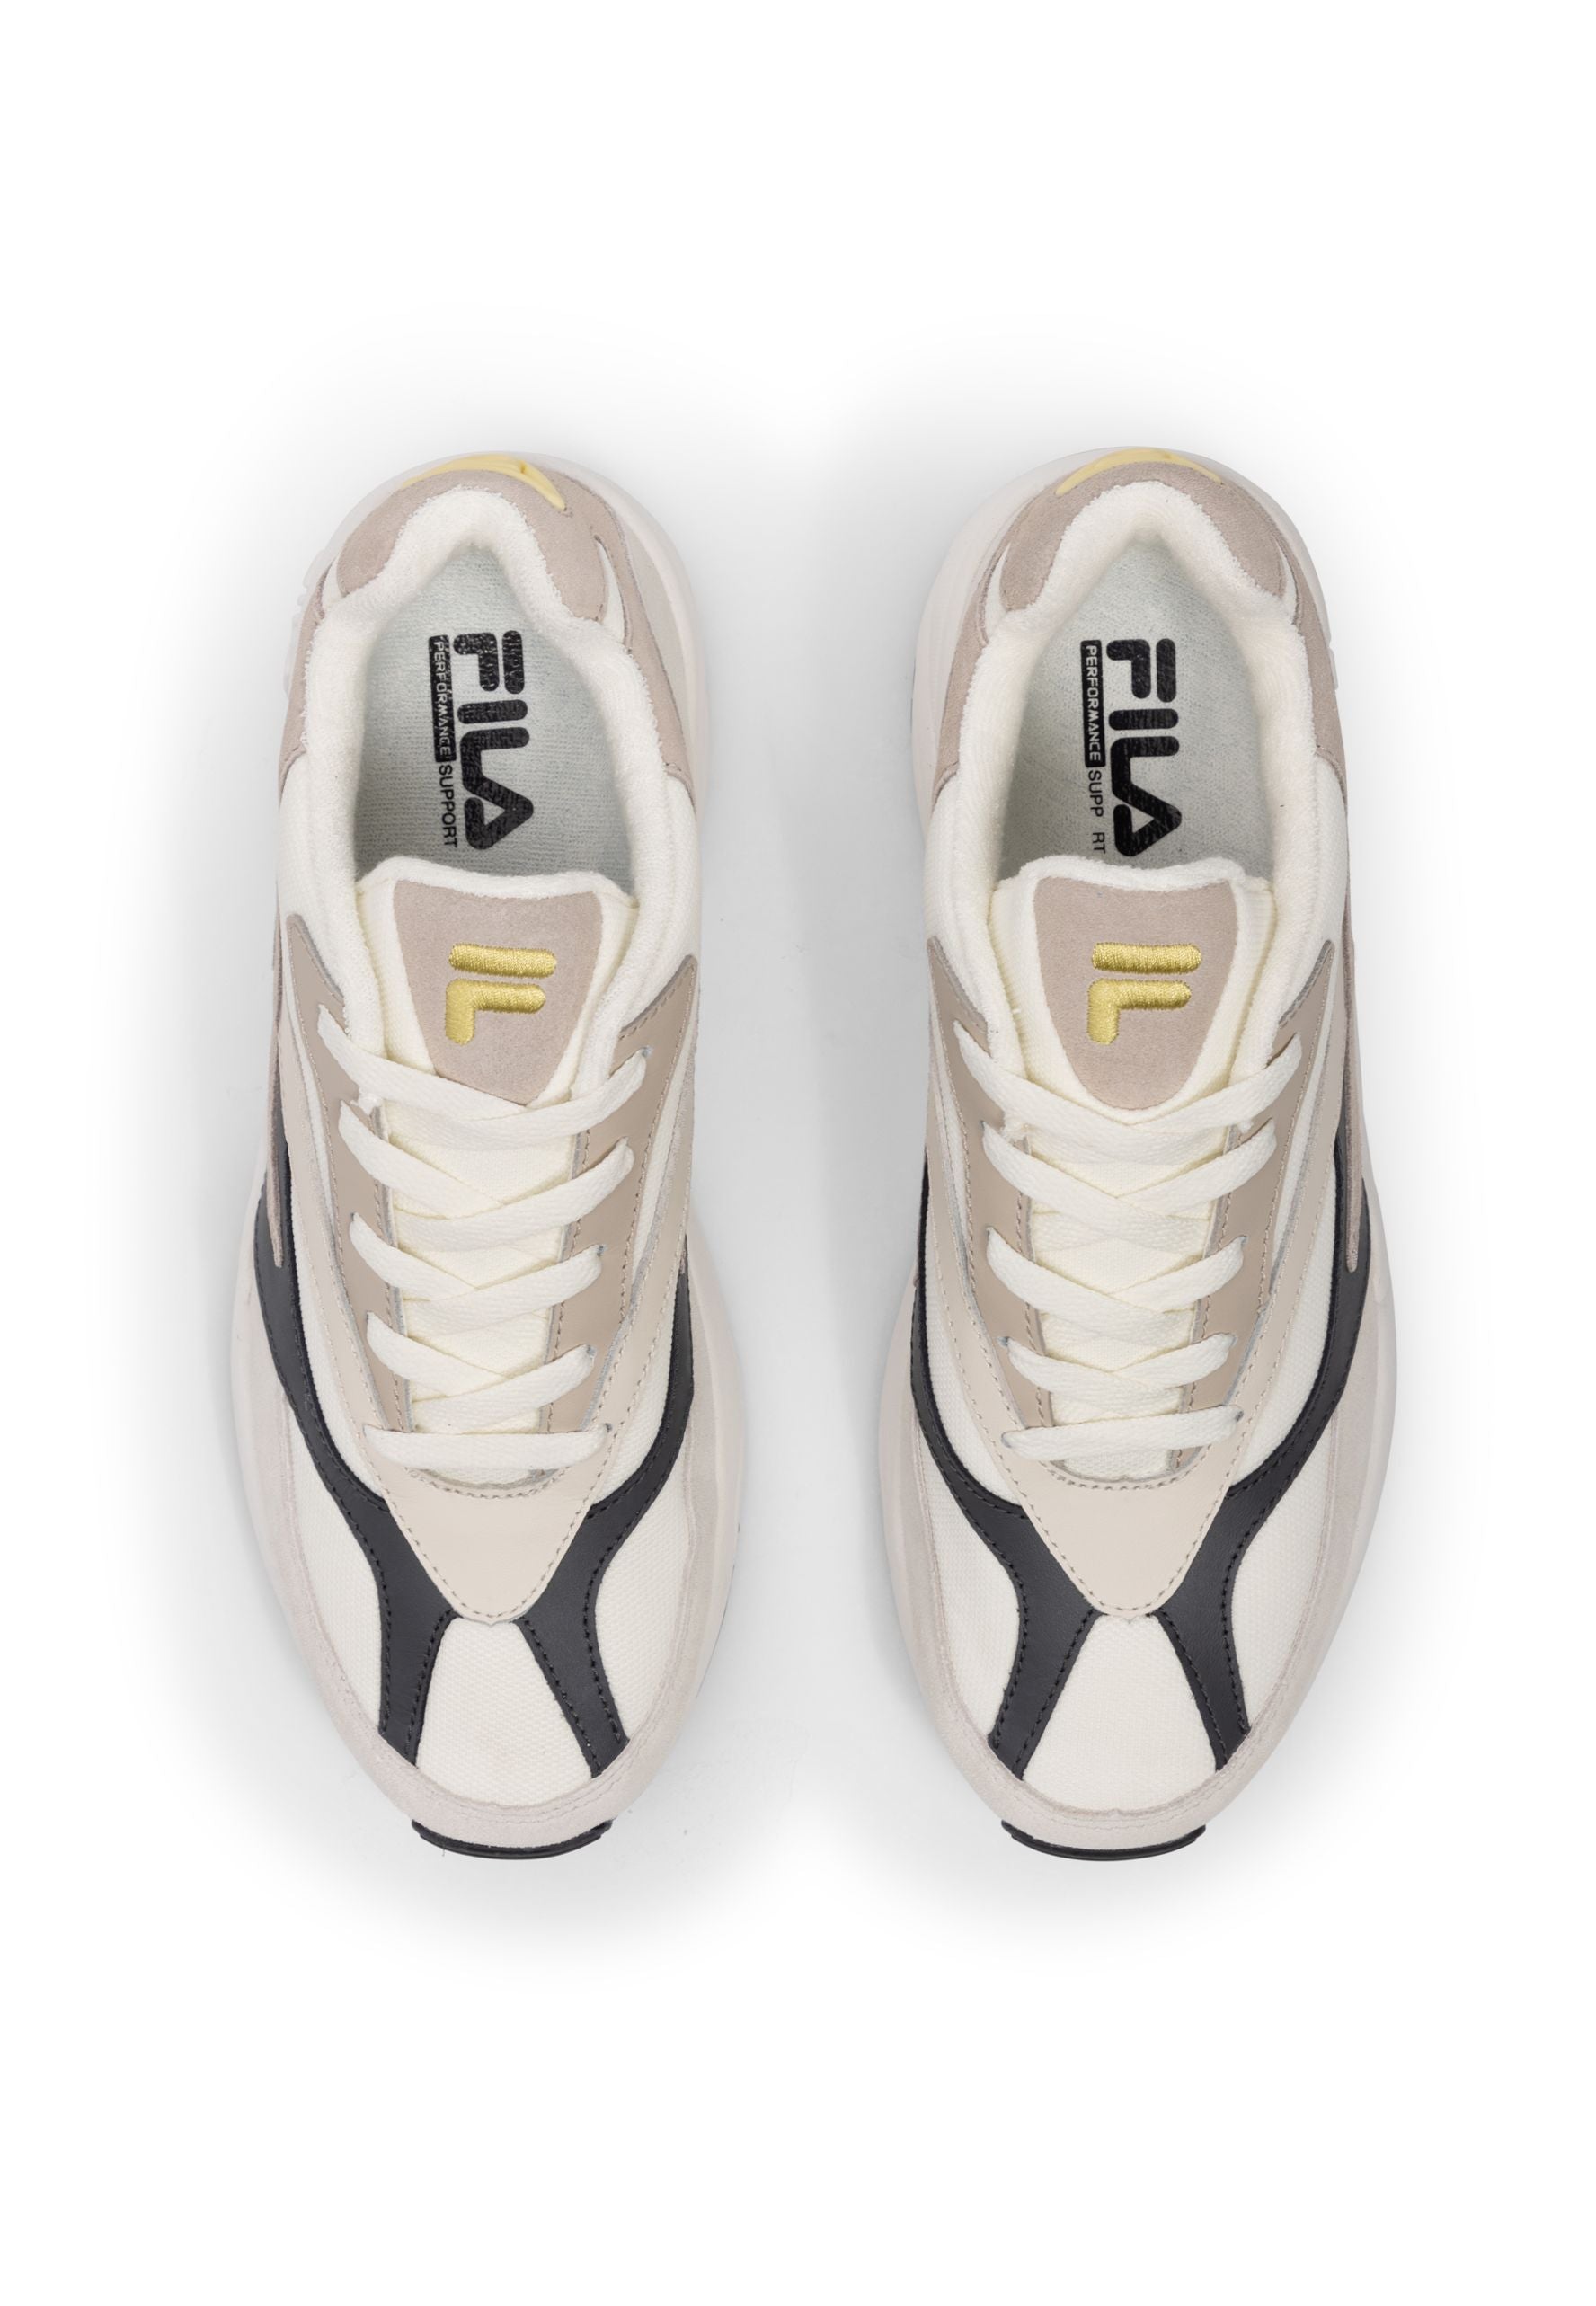 V94M in Marshmallow-Turtledove Sneakers Fila   